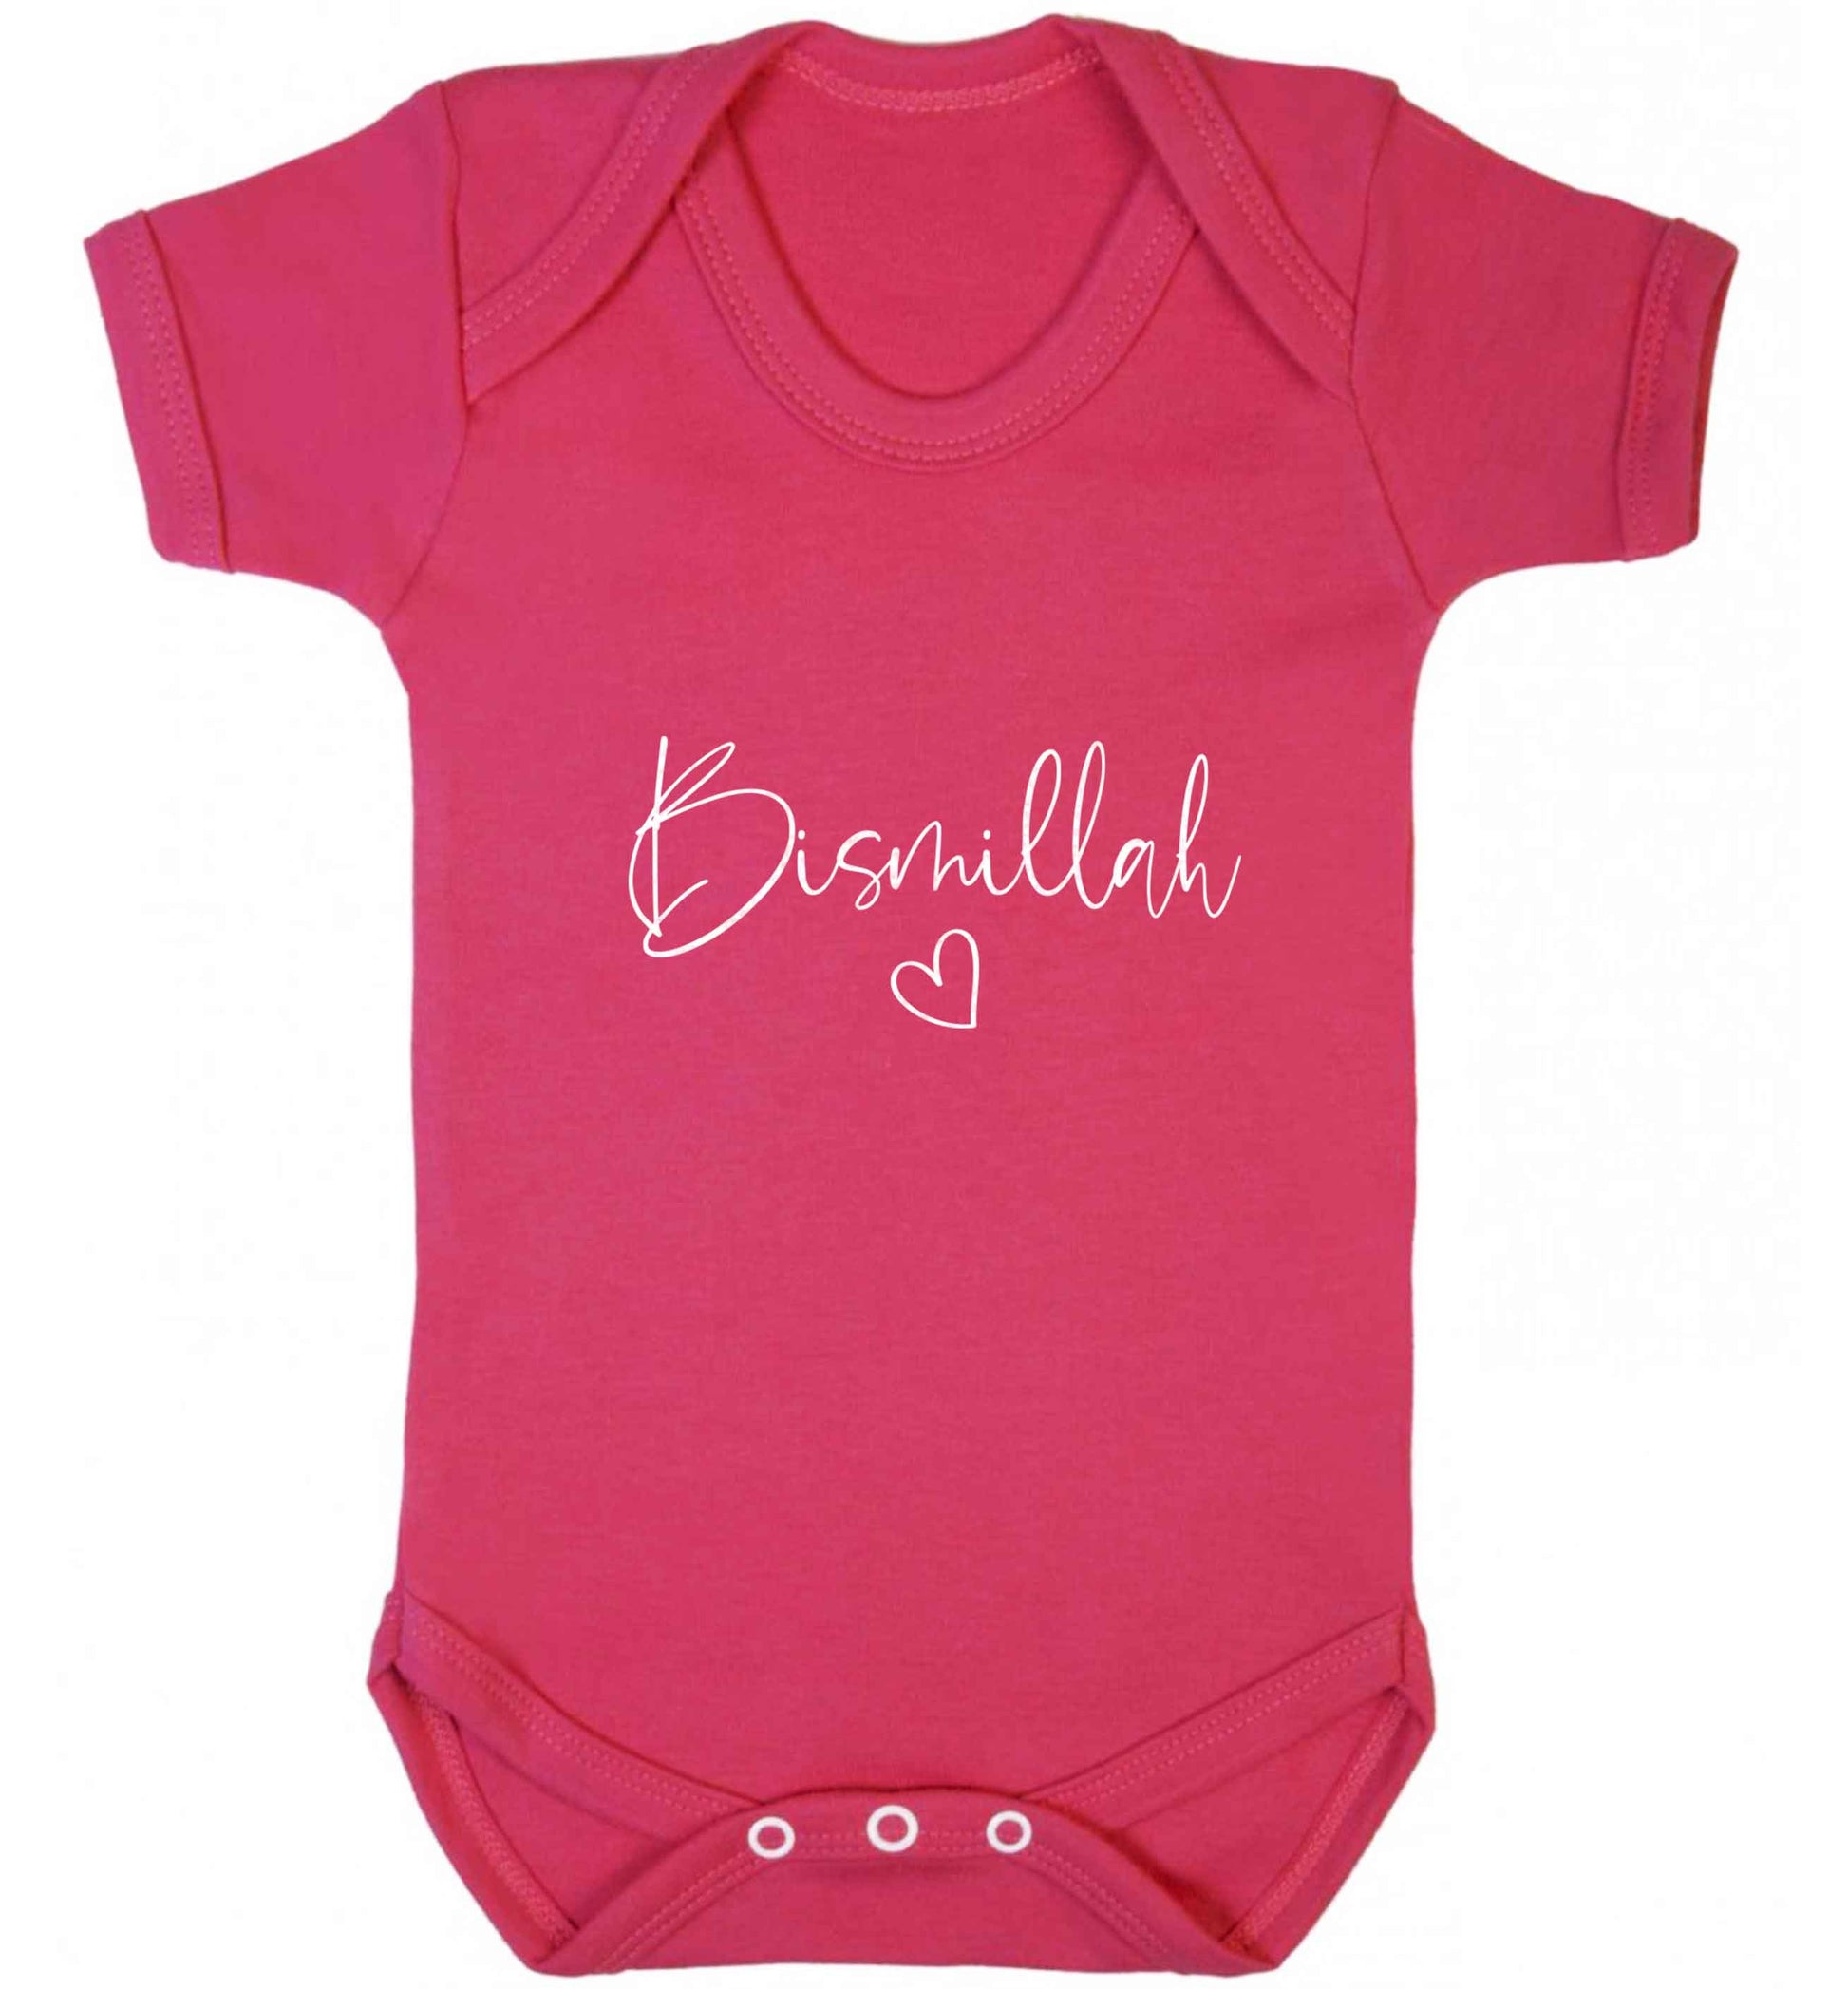 Bismillah baby vest dark pink 18-24 months